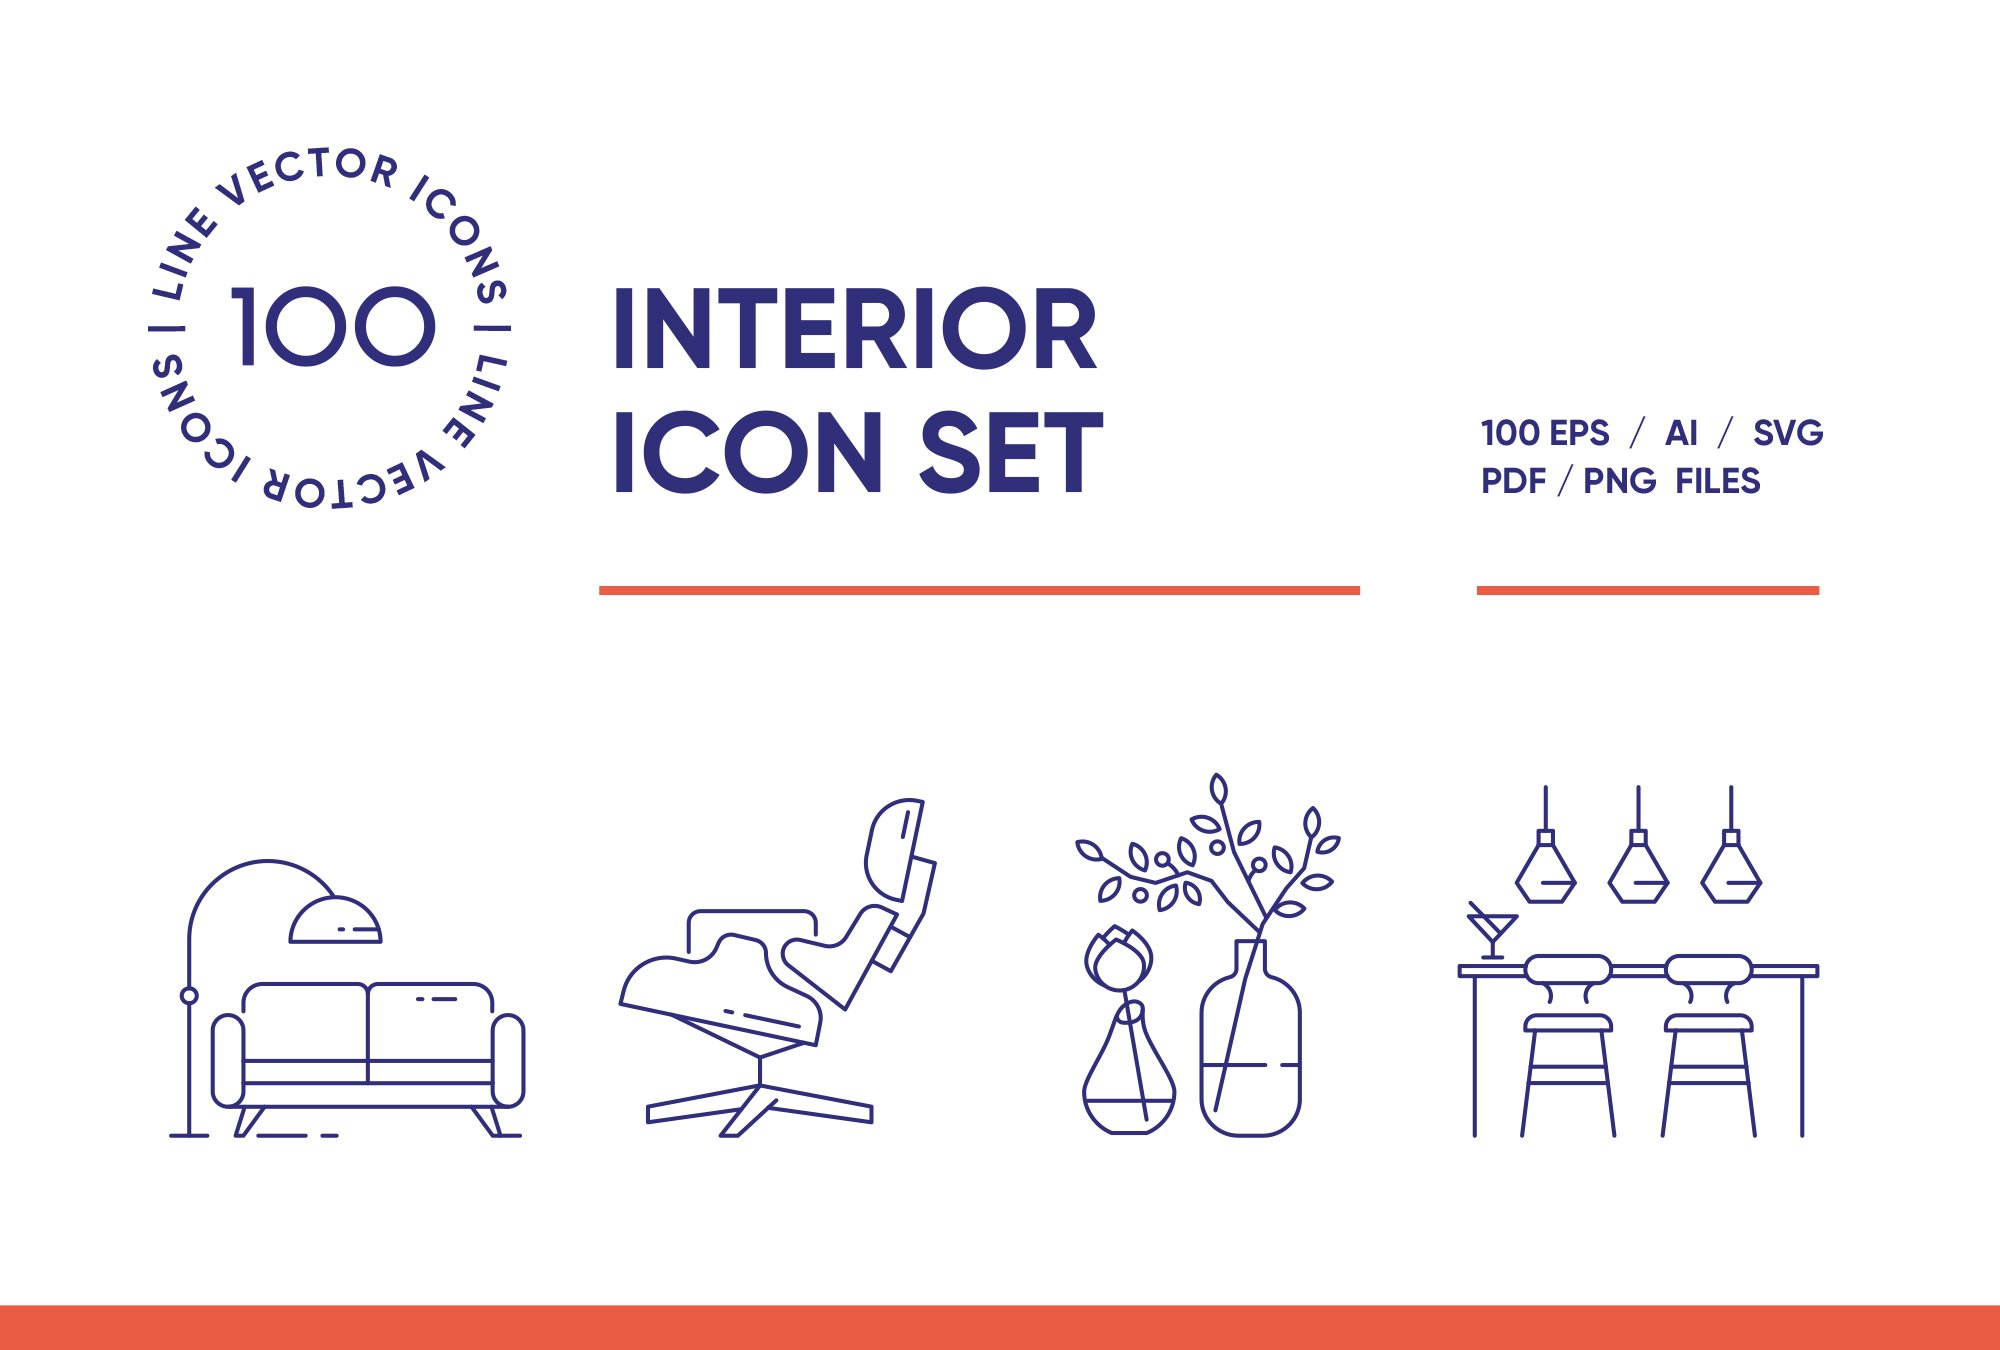 Interior Design Line Icon Set cover image.